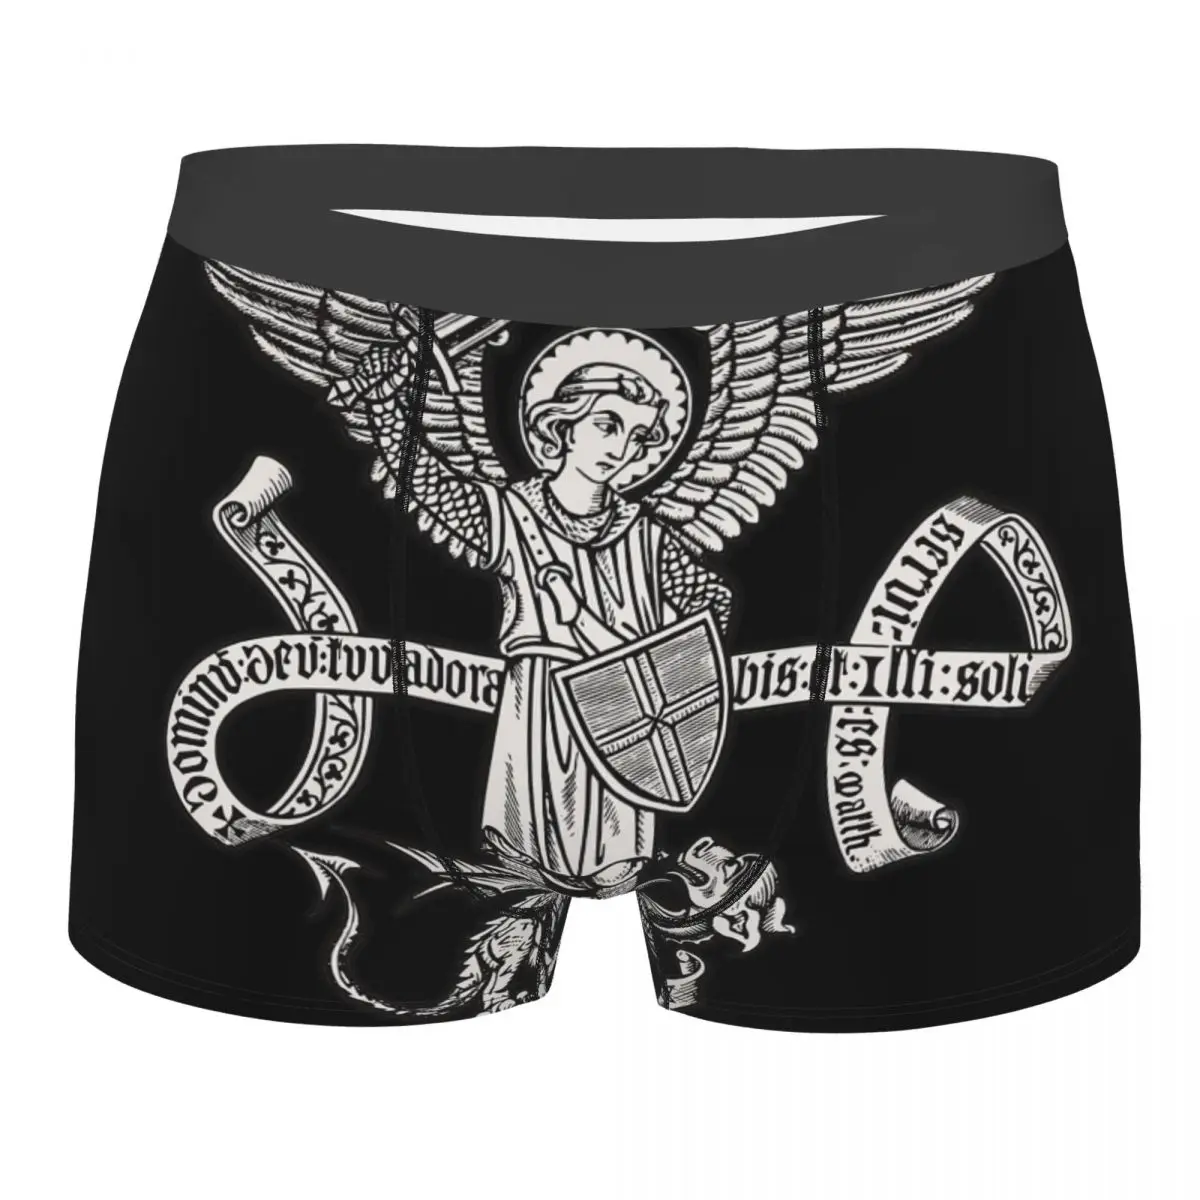 Saint Michael Archangel Catholic Underpants Breathbale Panties Male Underwear Print Shorts Boxer Briefs